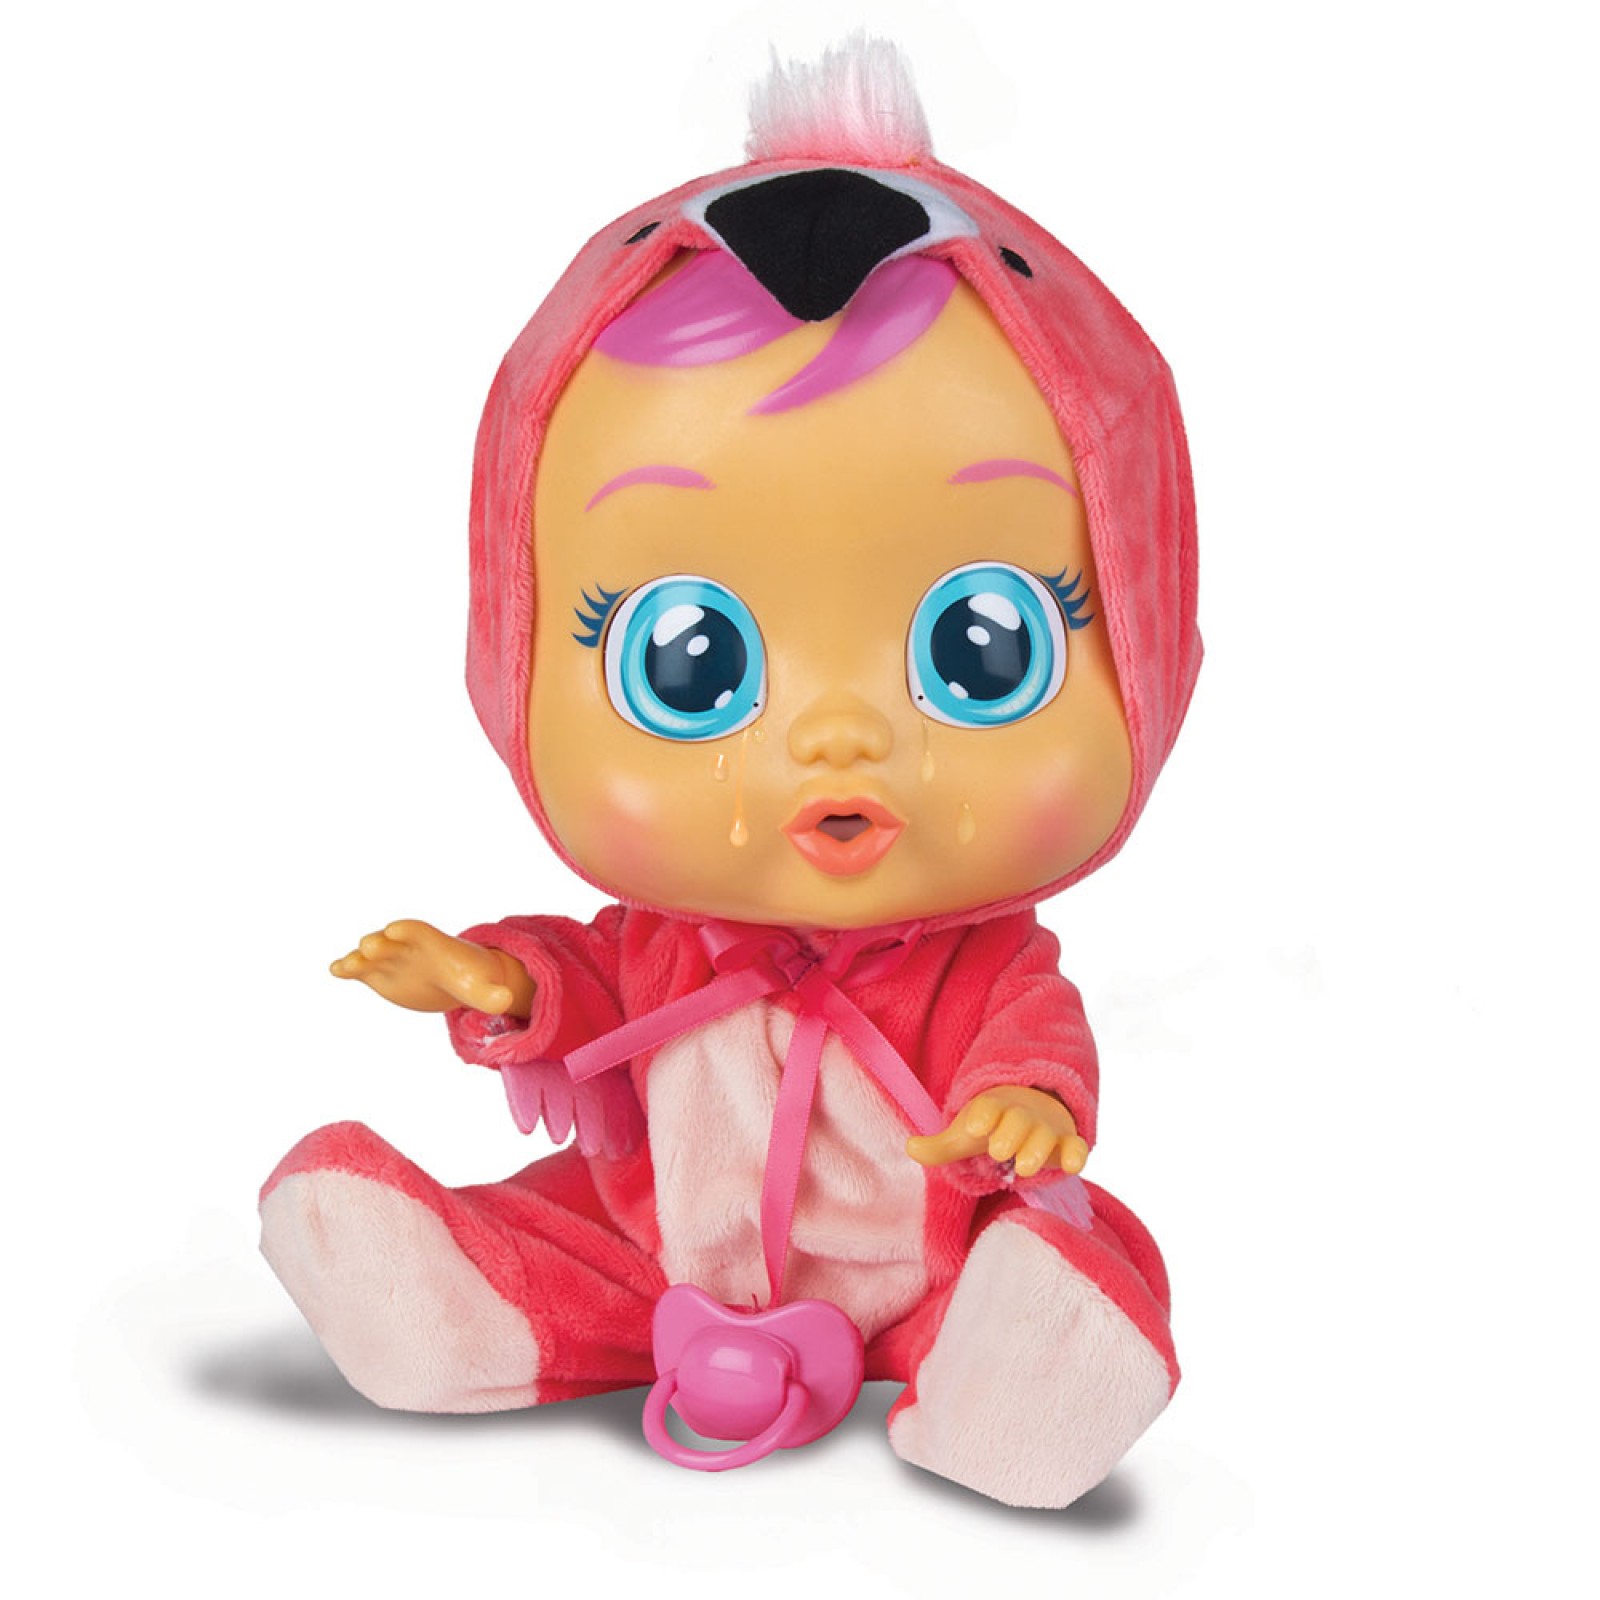 Край бебис новый. Пупс IMC Toys Cry Babies. Пупс IMC Toys Cry Babies Плачущий младенец Fancy, 31 см, 97056. Пупс IMC Toys Cry Babies Плачущий.